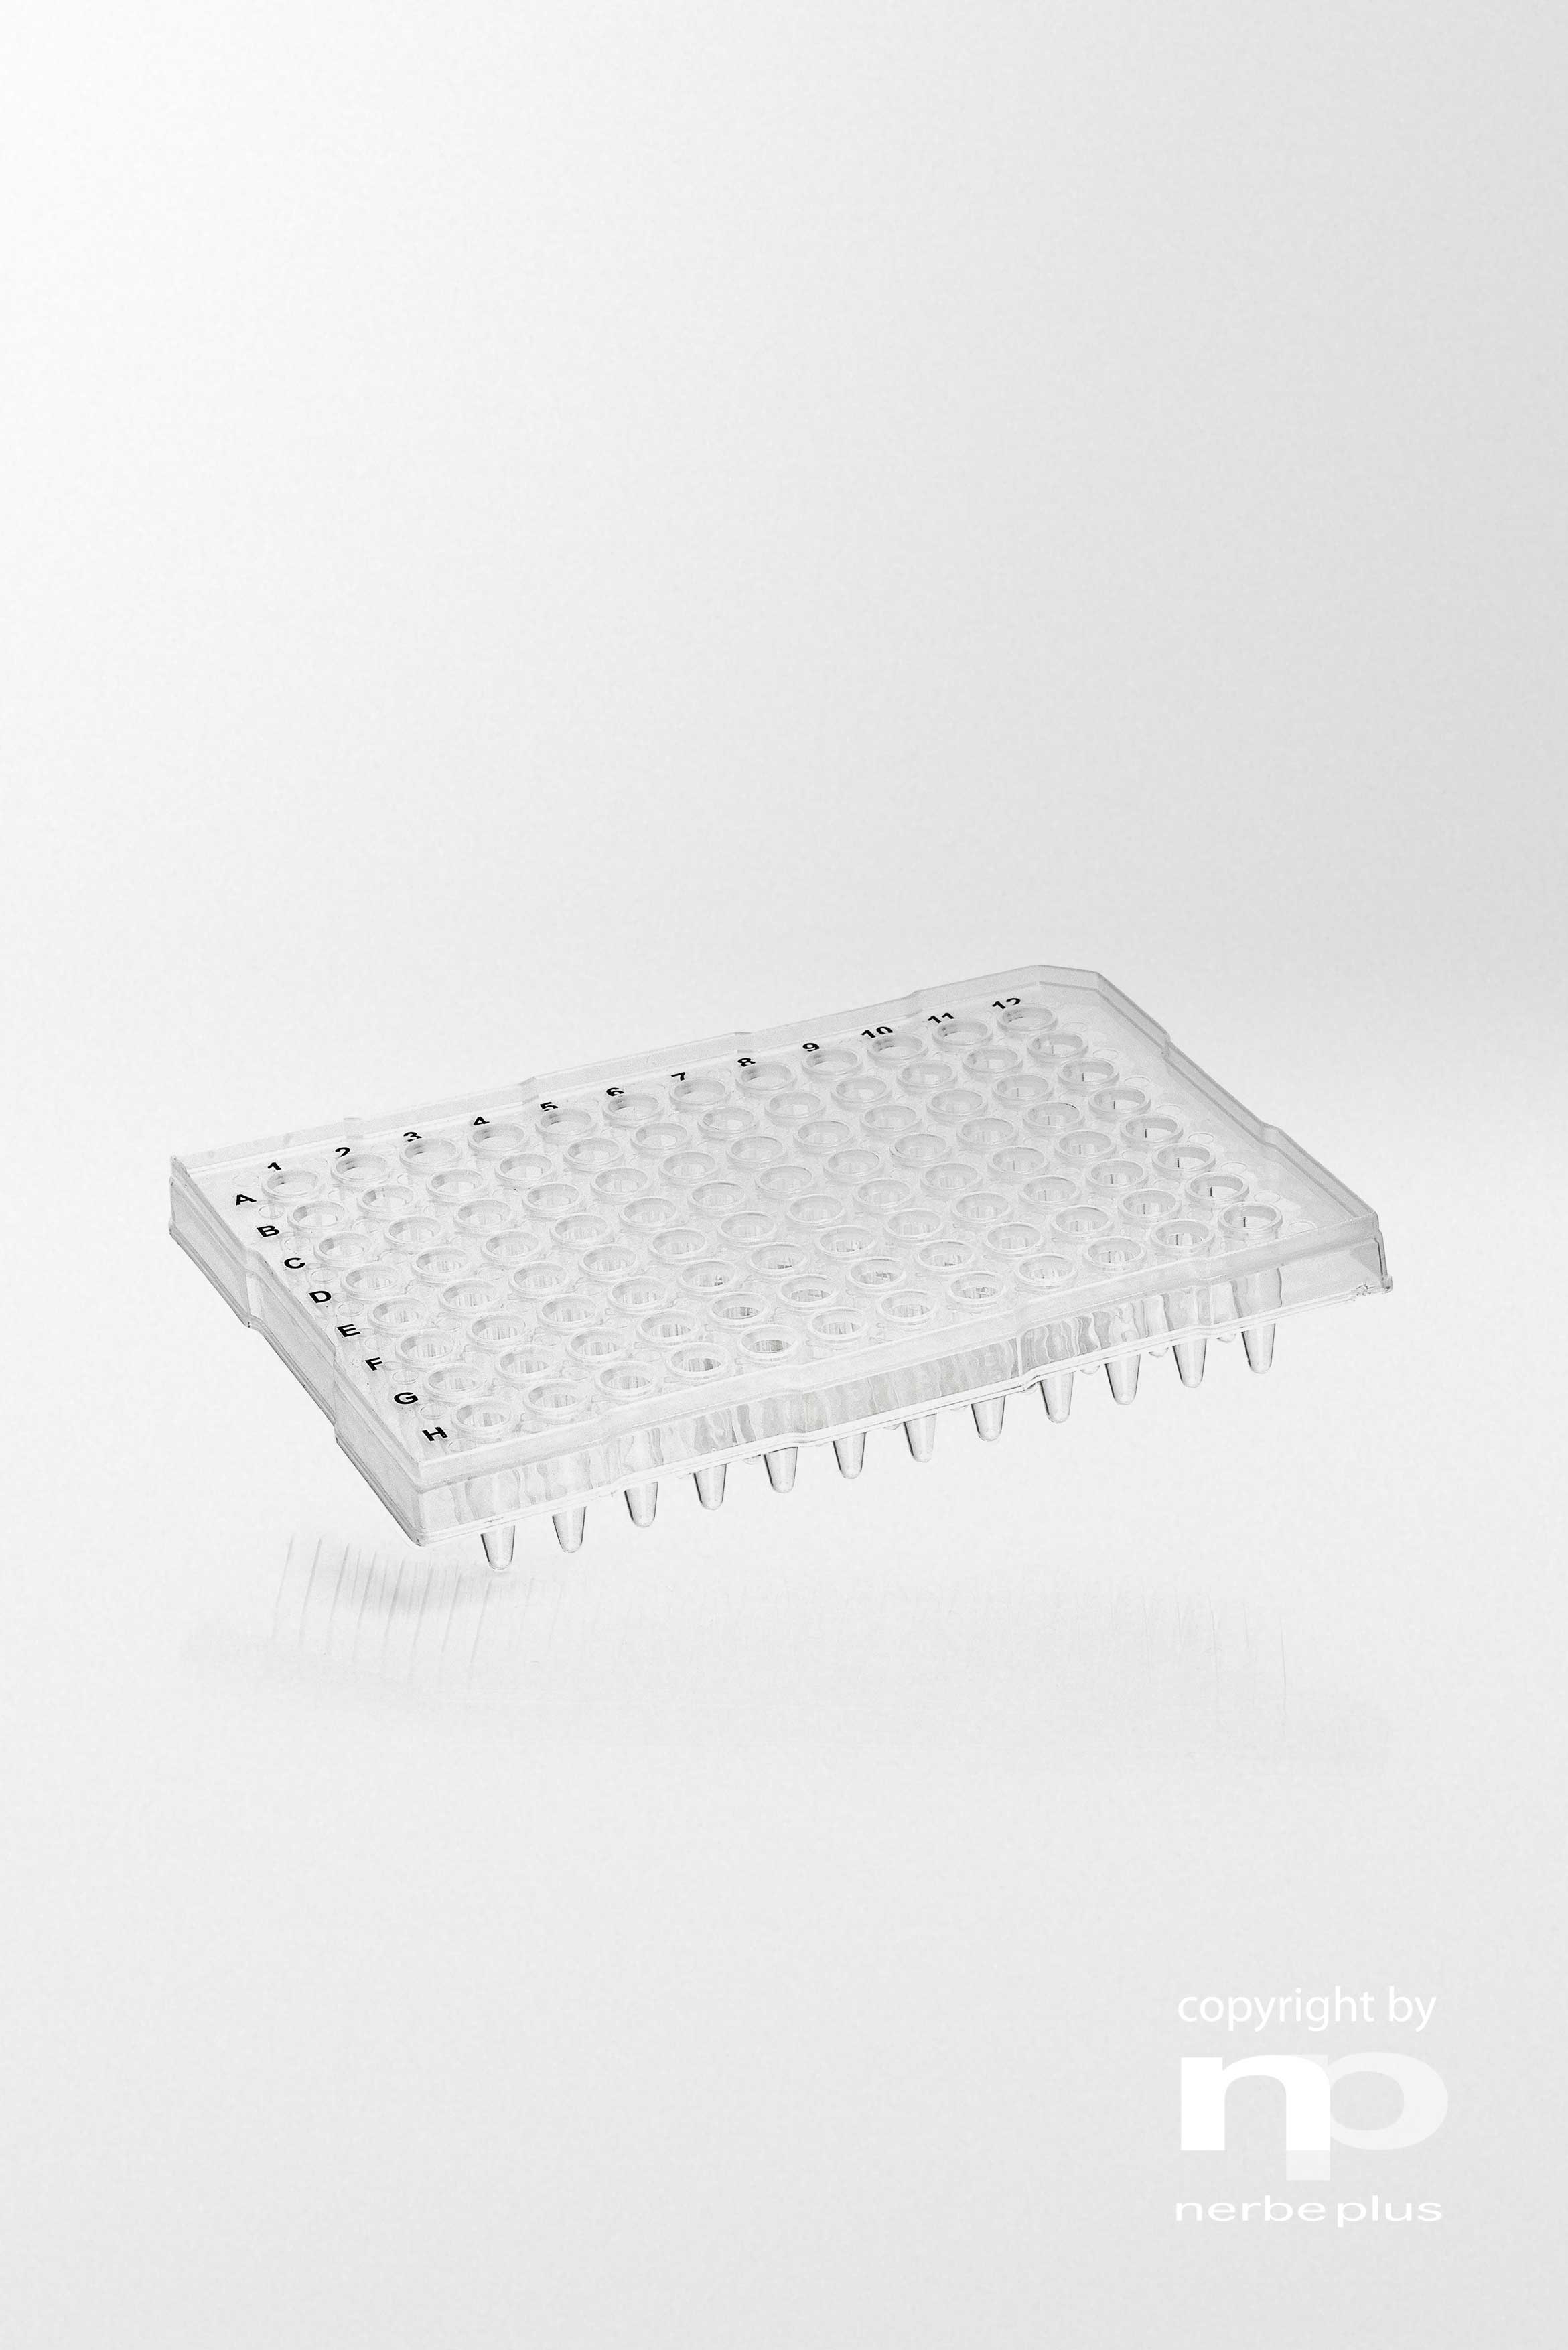 Placas para PCR. NERBE-PLUS. Capacidad: 96x0,2 ml. Tipo: Semi faldón, bordes altos. Resist. centrif (g): 6000. Color: Transparente. Esterilidad: PCR Ready. qPCR: Sí